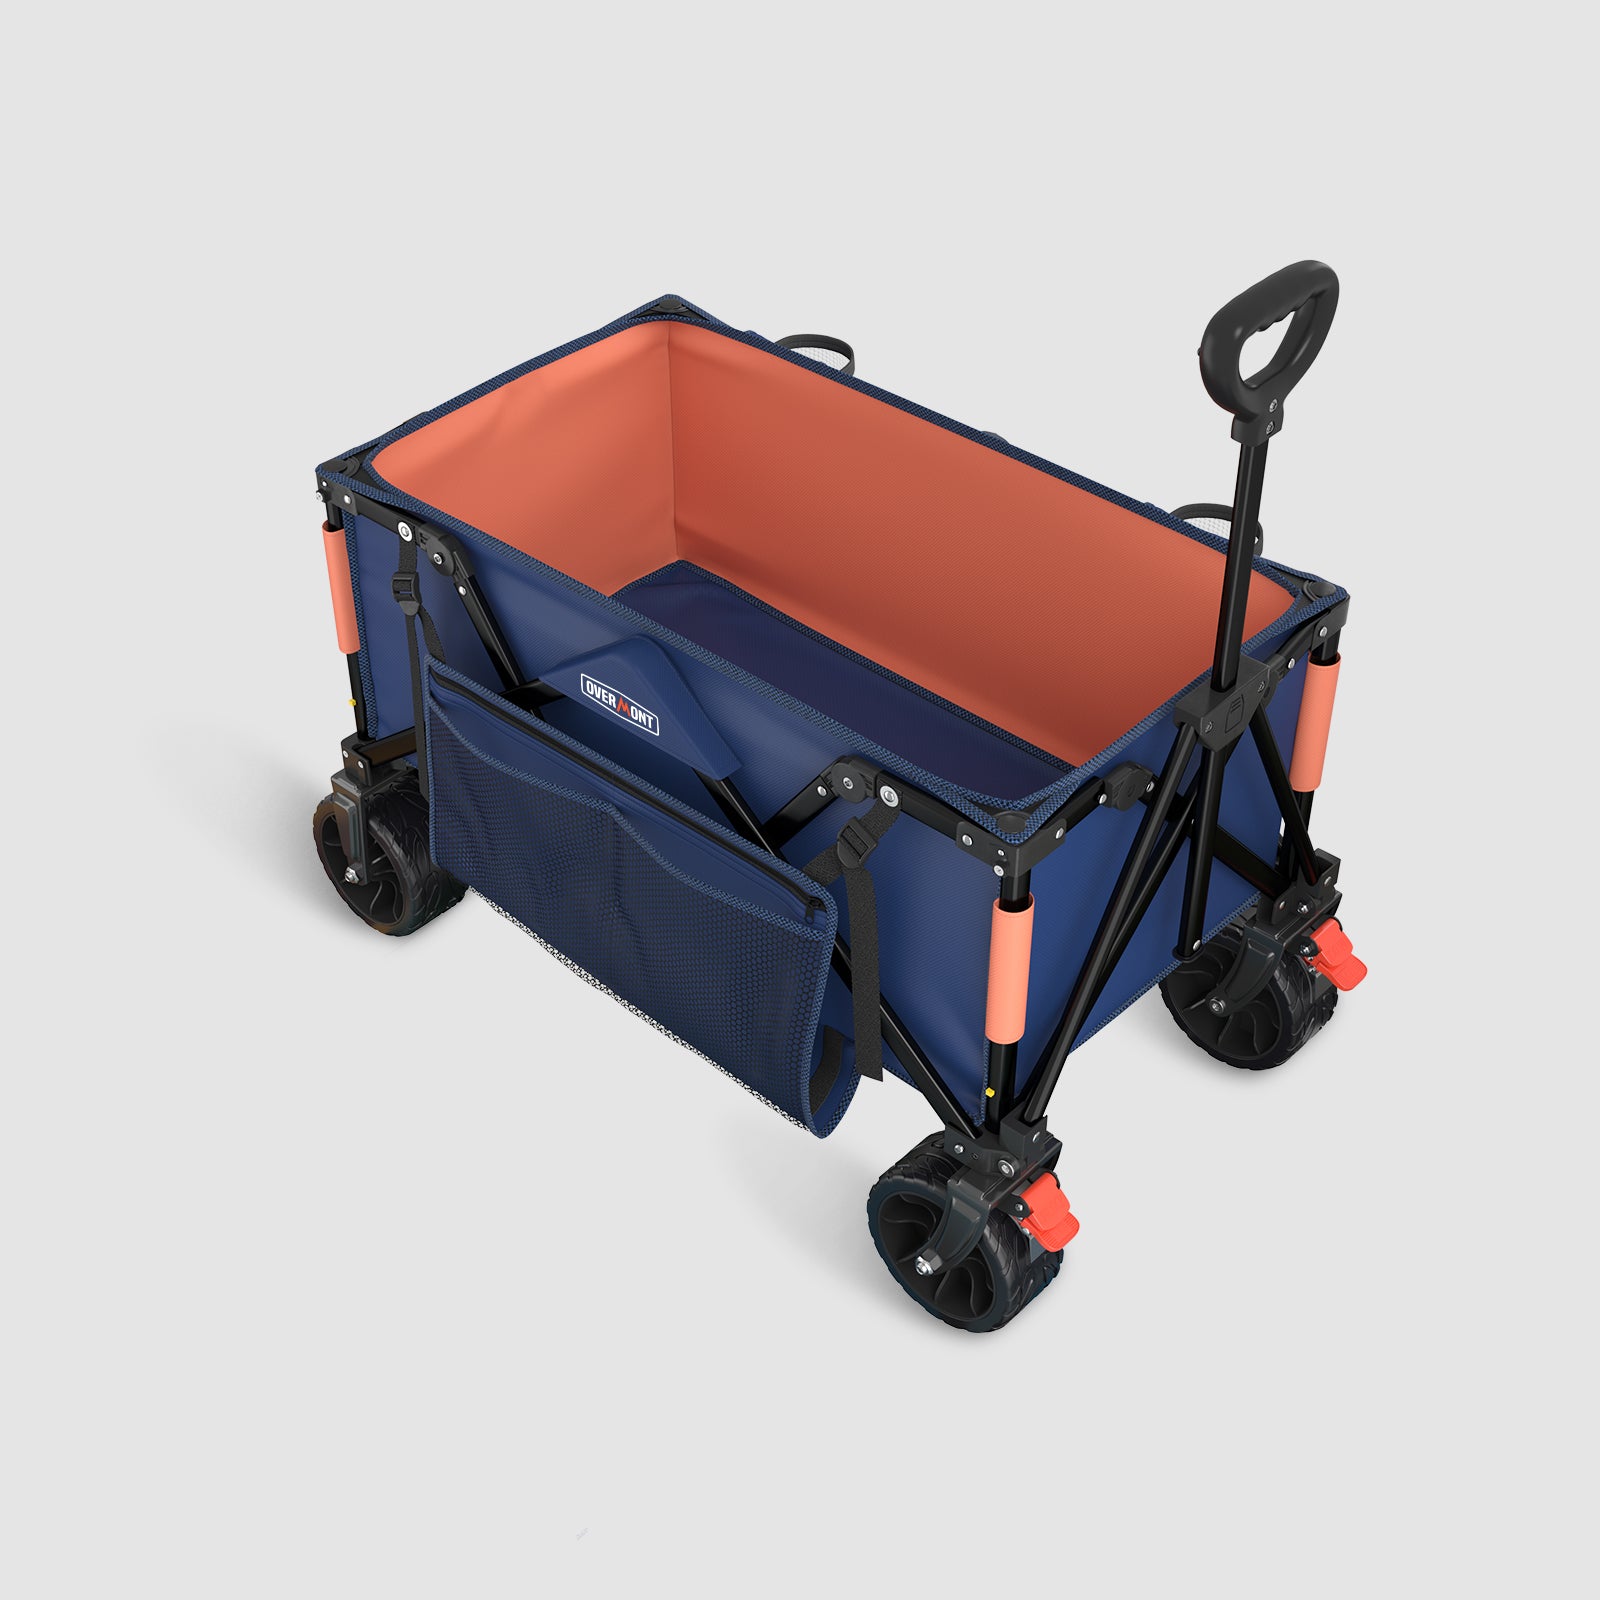 3.2 In wheel blue folding wagon